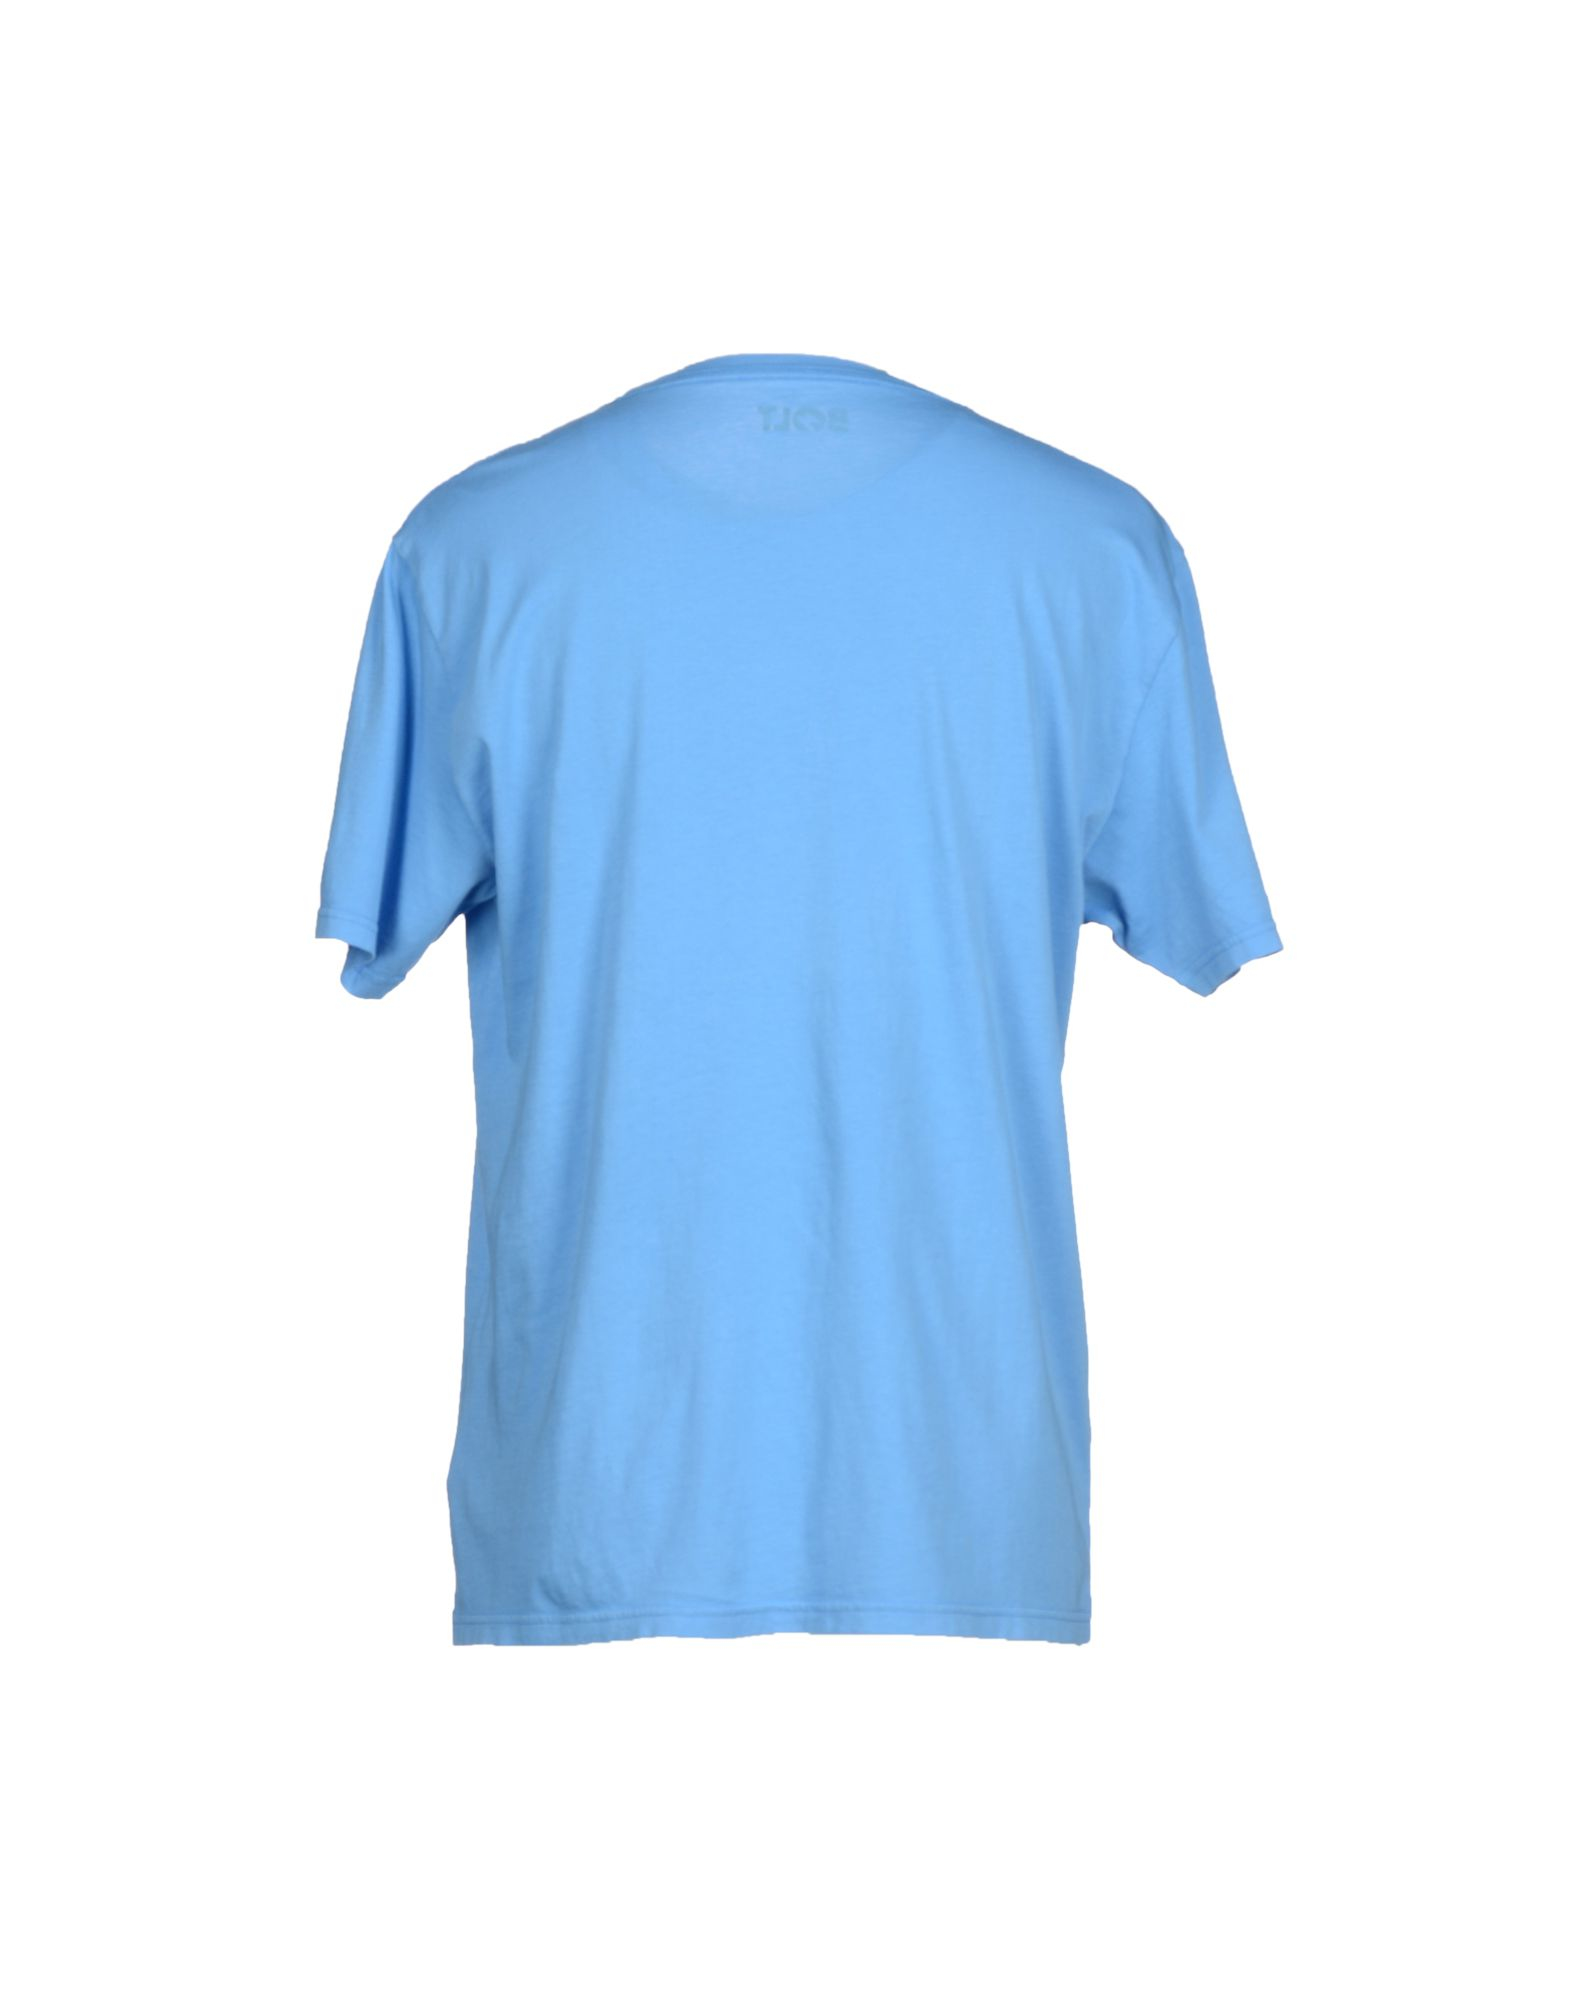 Lyst - Lightning Bolt T-shirt in Blue for Men